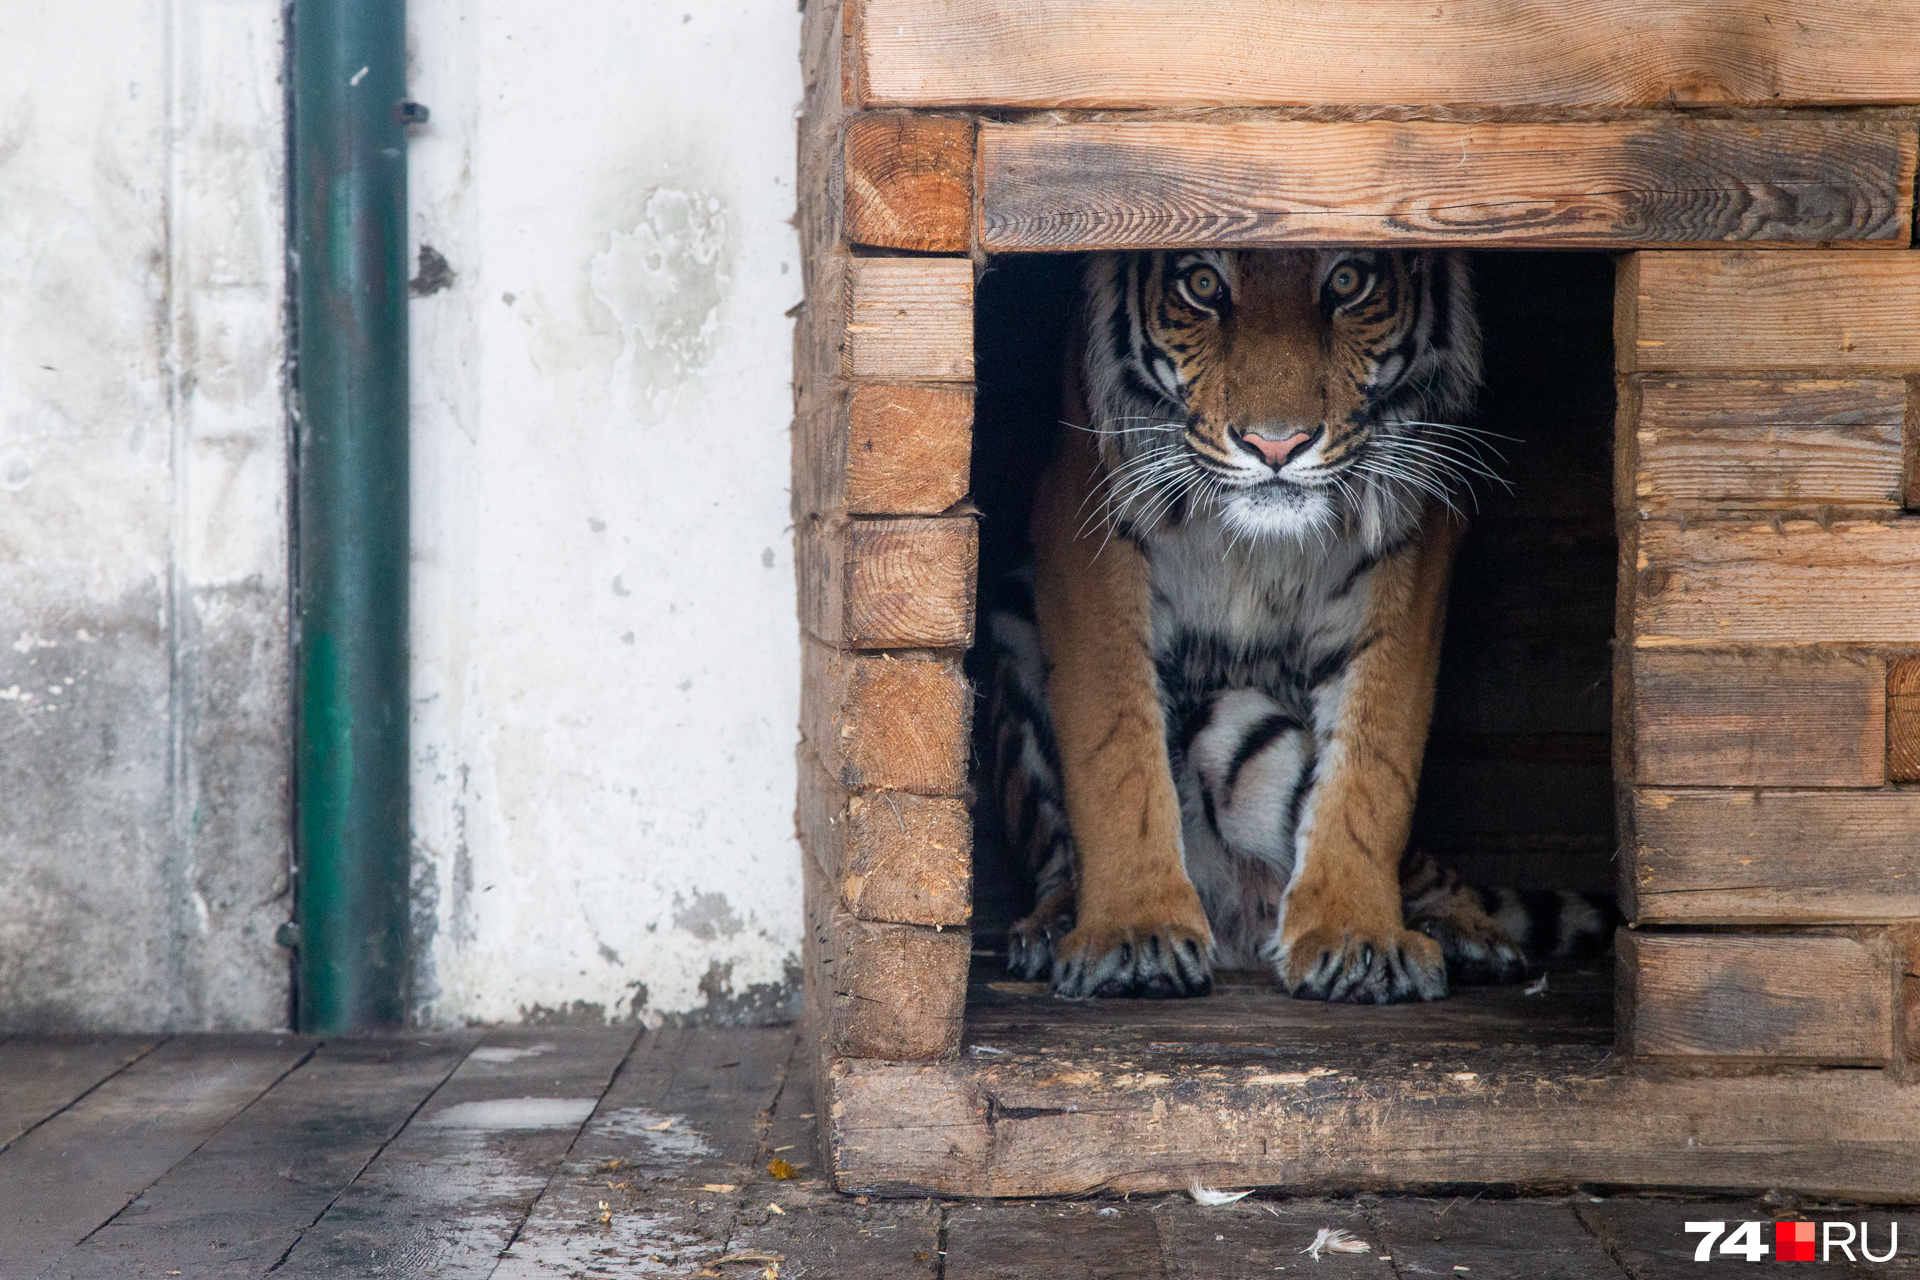 Скоро тигр сменит тесную клетку на просторный вольер в тайге